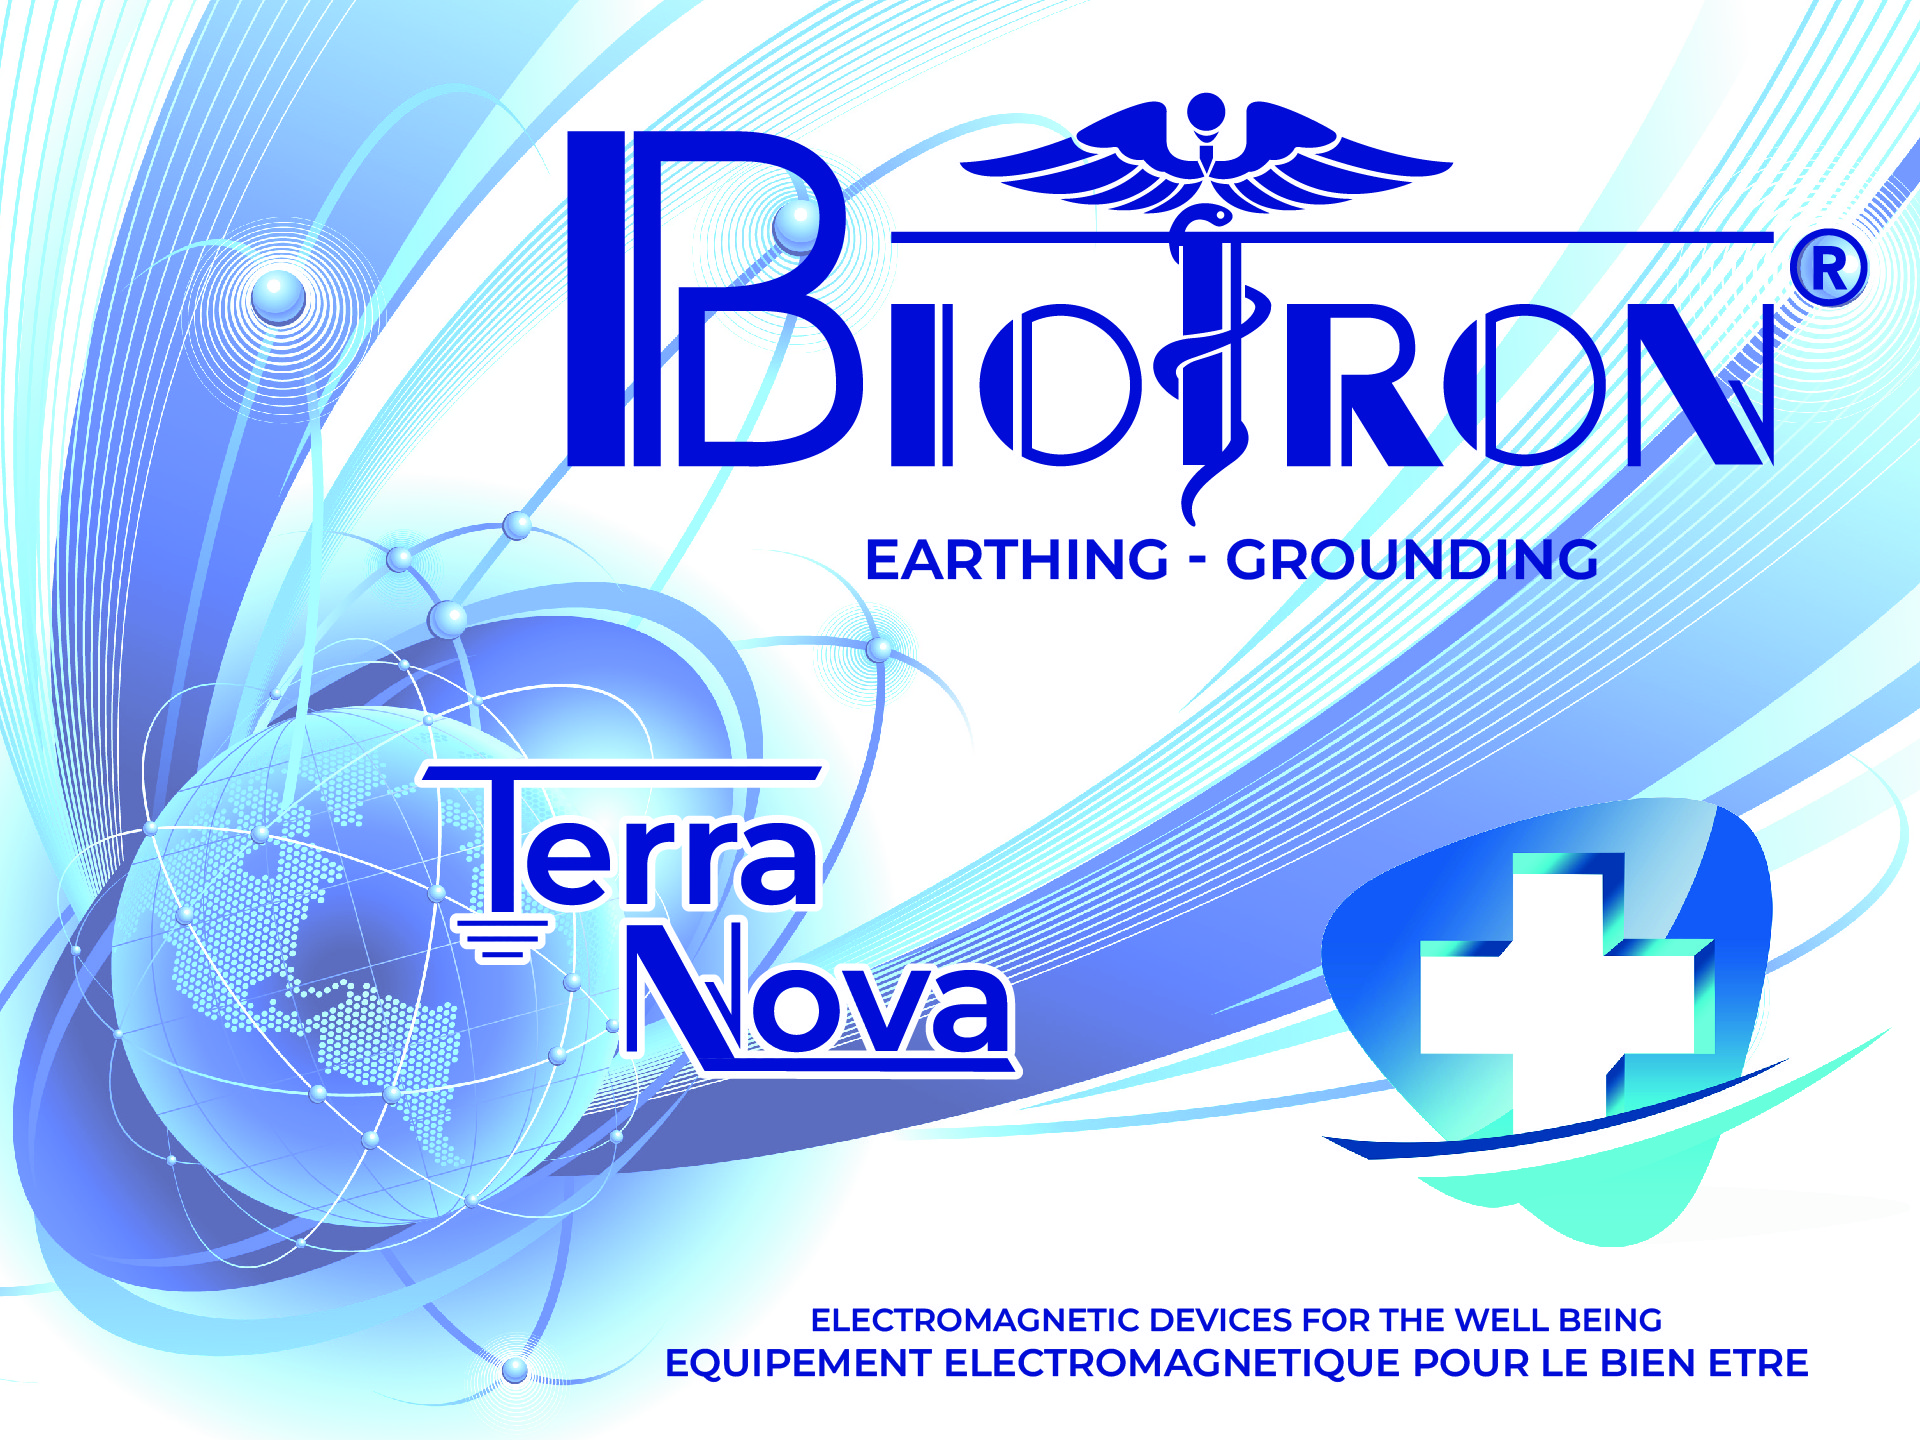 earthing grounding terra nova sur www.grounding-biotron-earthing.com